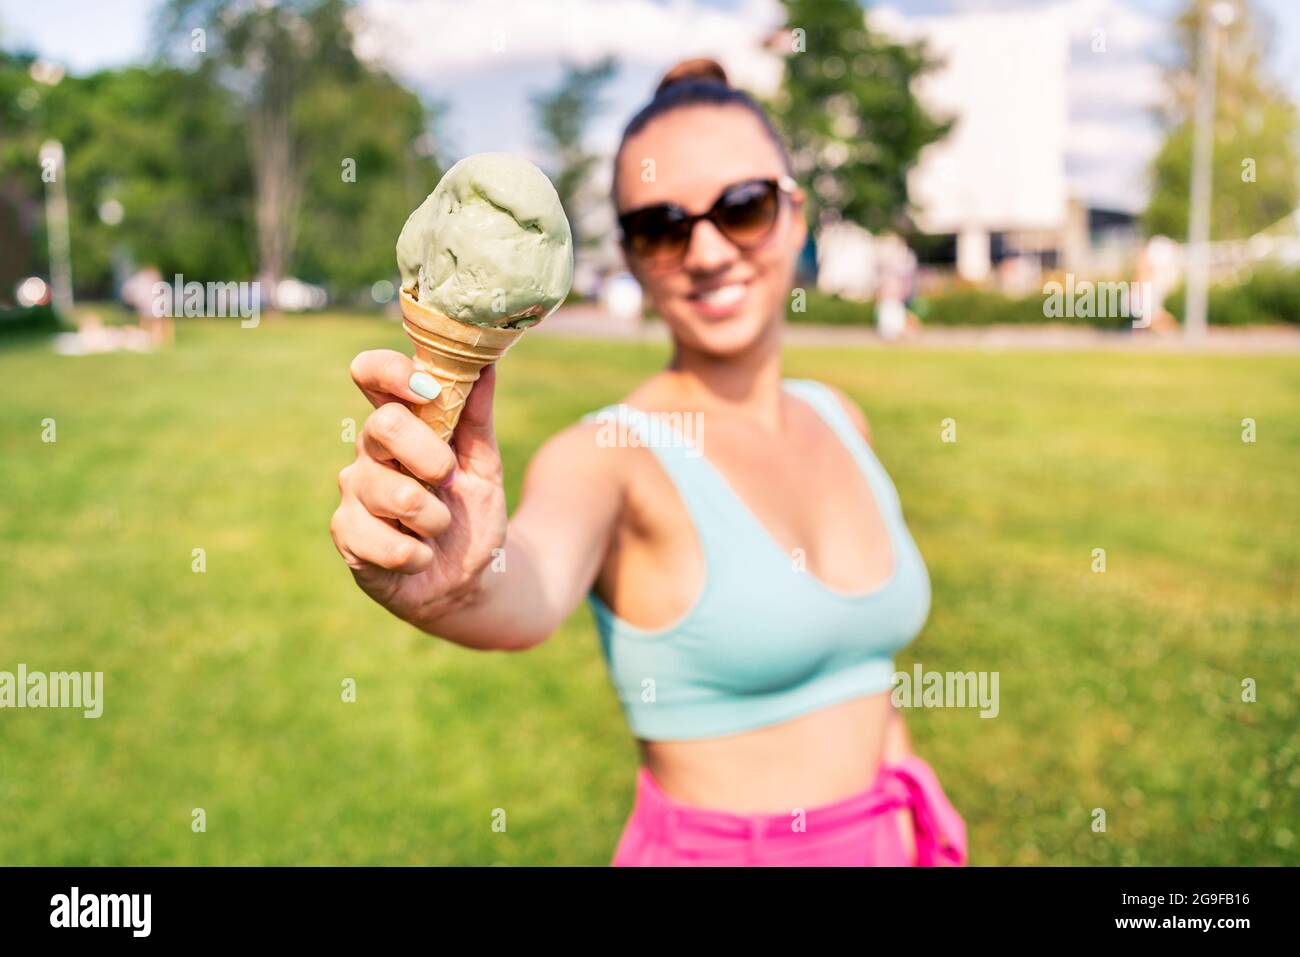 Fit schlanke Frau zeigt Eis-Kegel im Stadtpark im Sommer. Glücklich lächelndes Porträt von jungen lachenden Modell und schmelzenden Eis. Stockfoto